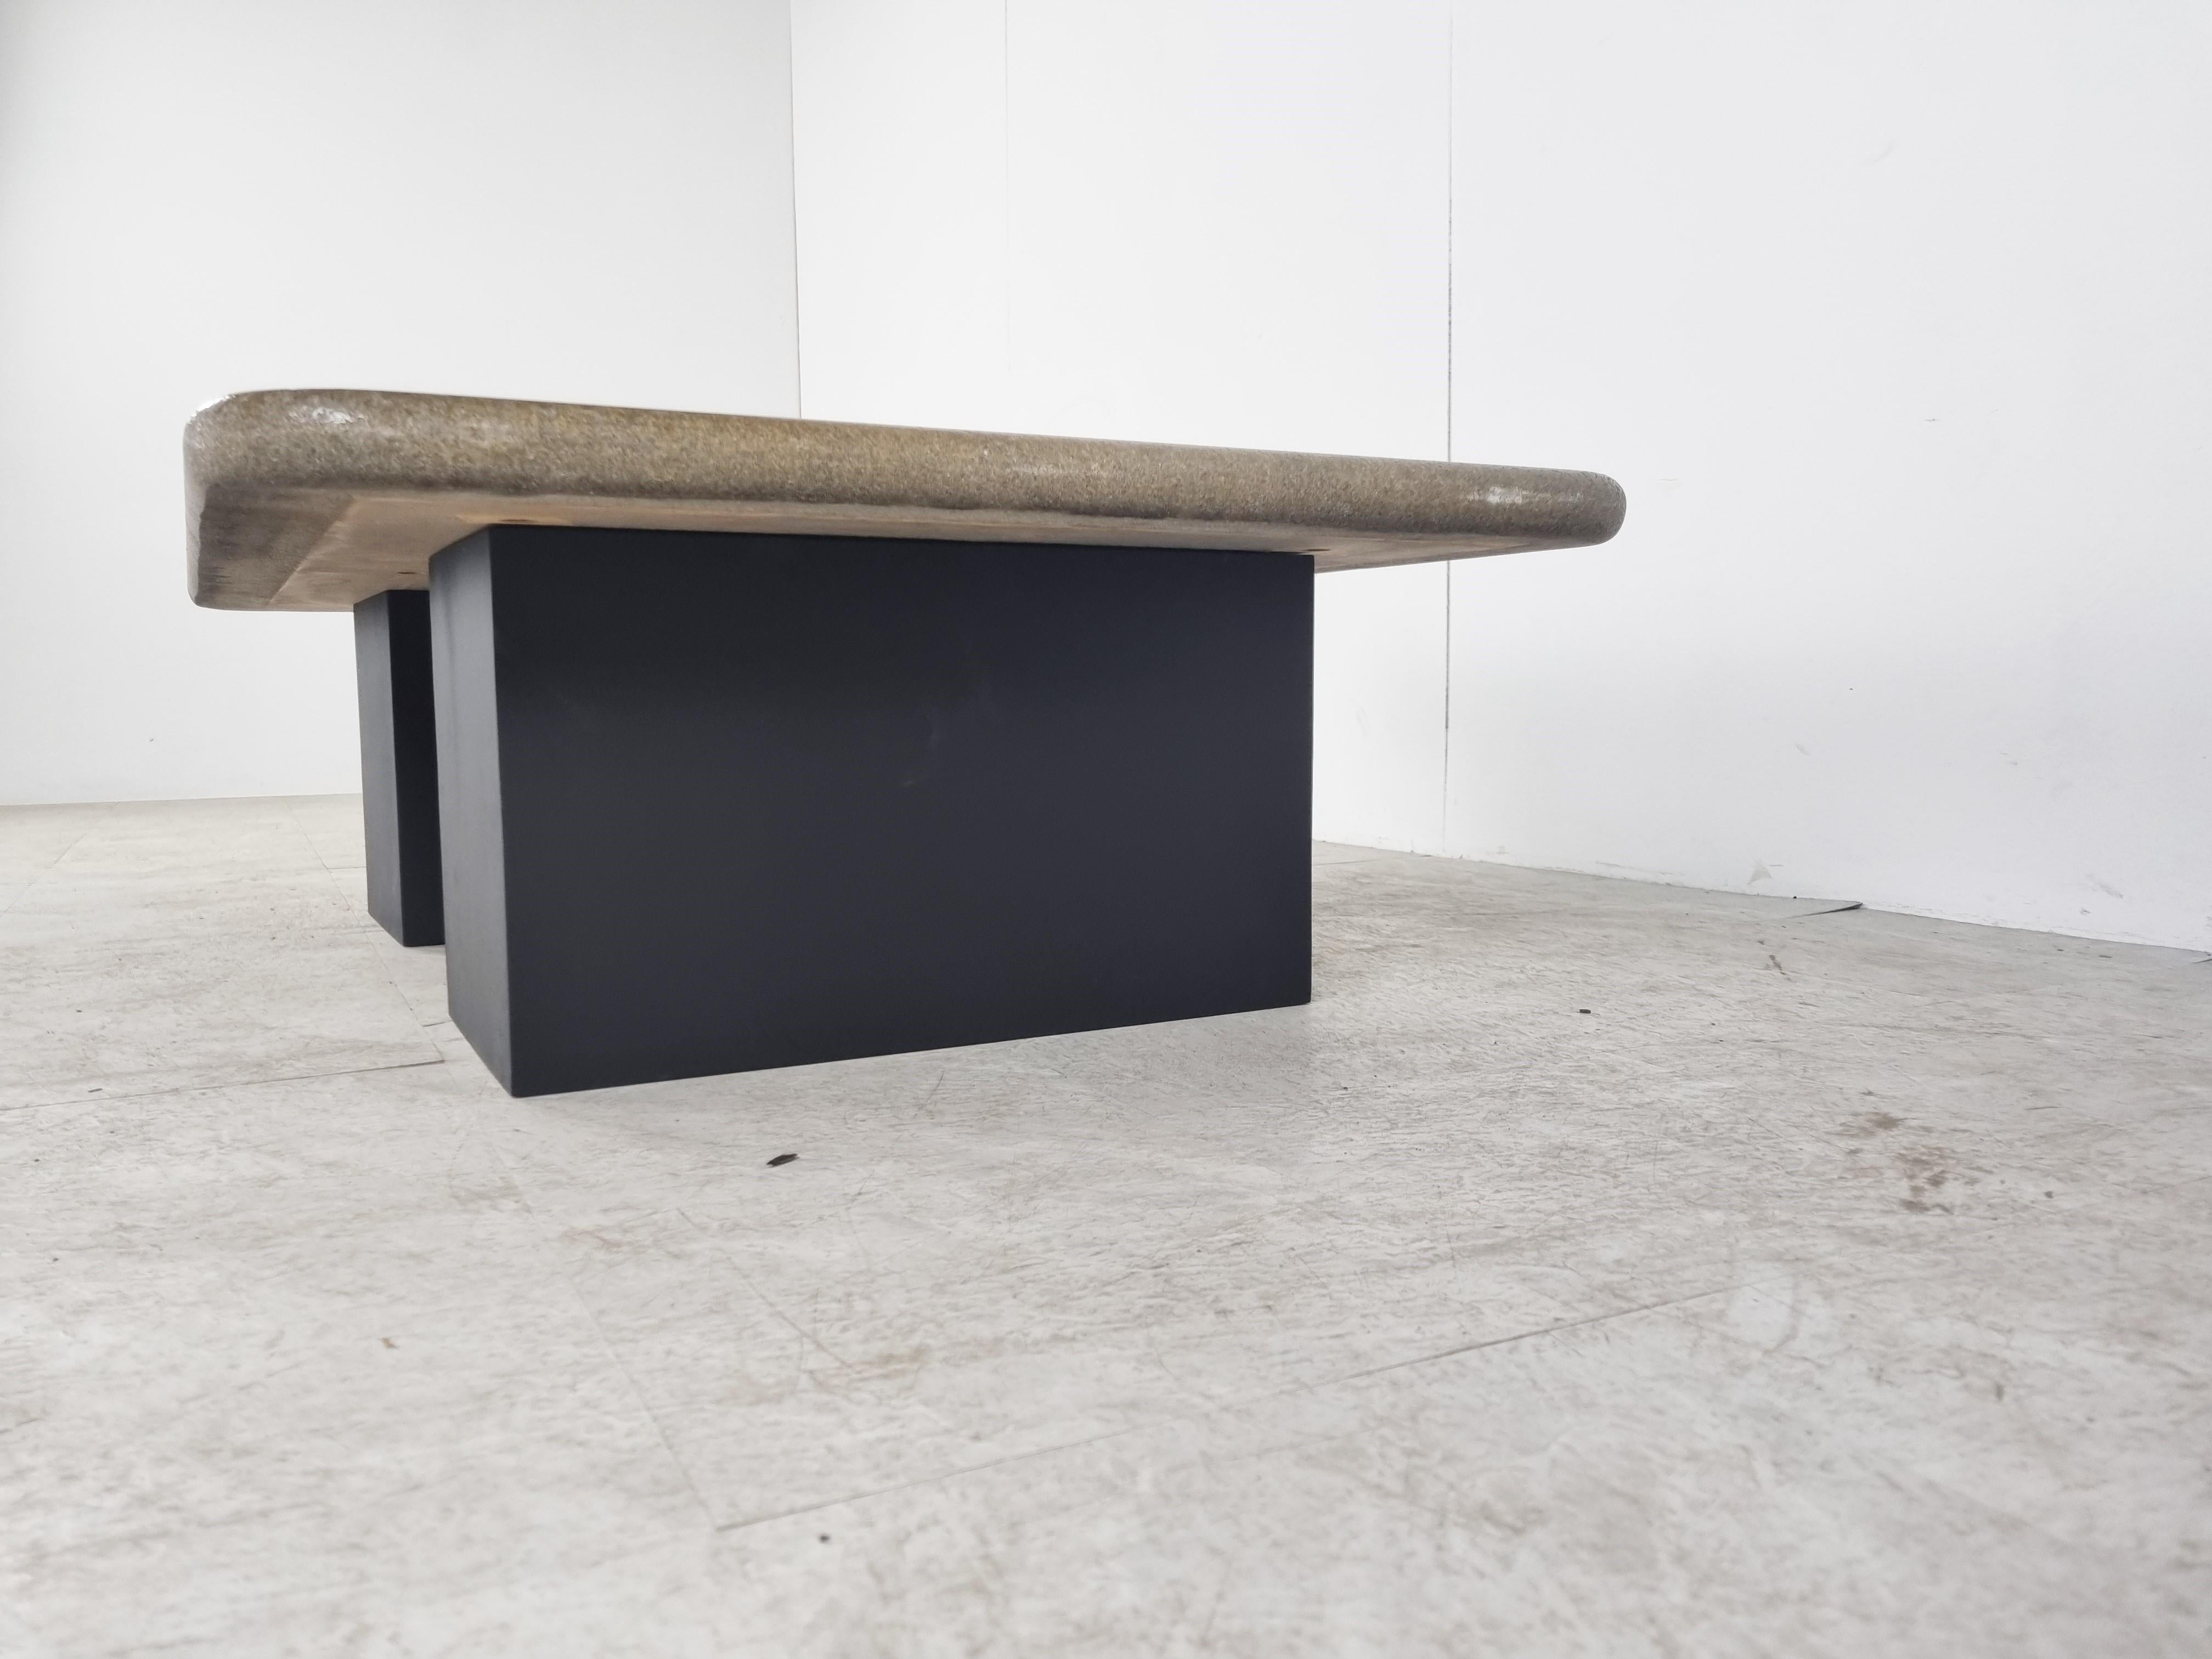 Table basse brutaliste en pierre d'ardoise avec un effet 3D.

Double base en bois.

Signé par 